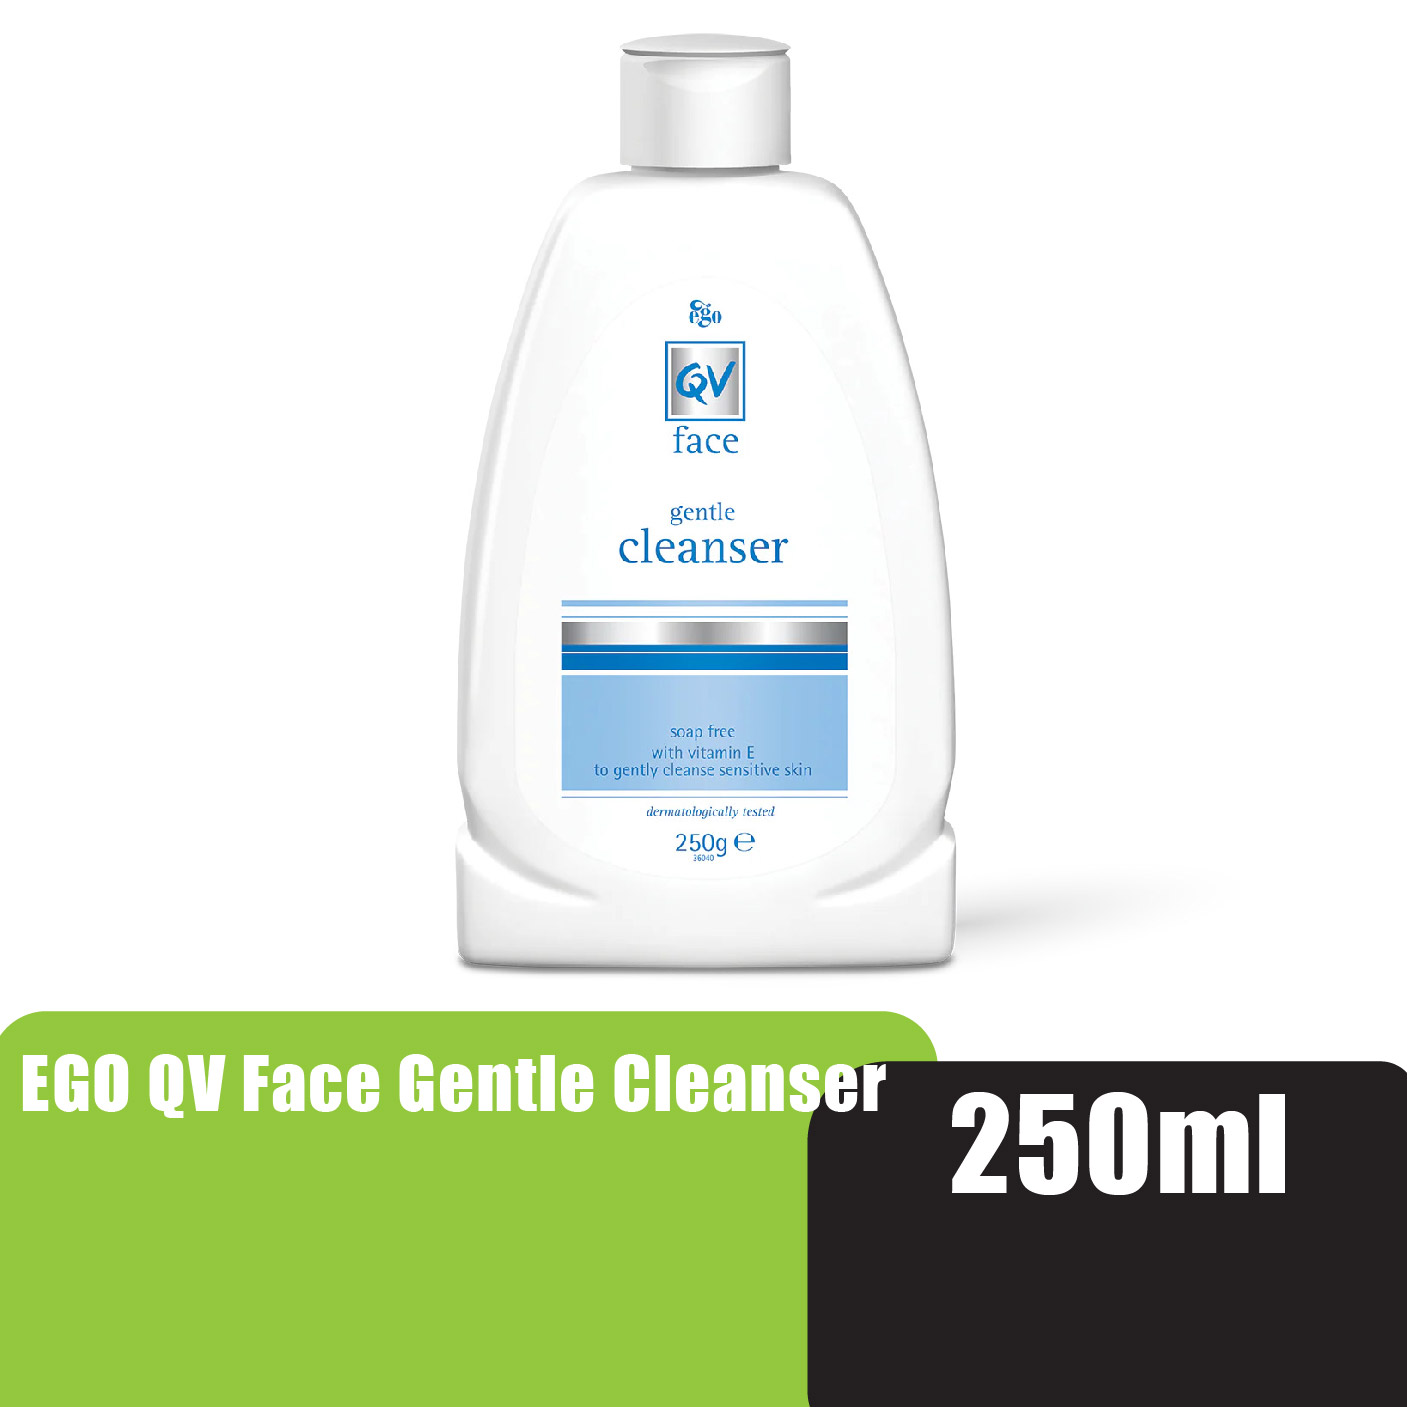 EGO QV Gentle Facial Cleanser 200ml - Face Wash For Sensitive, Dry Skin Pencuci Muka / Pembersih Muka 洗臉霜 洗脸乳